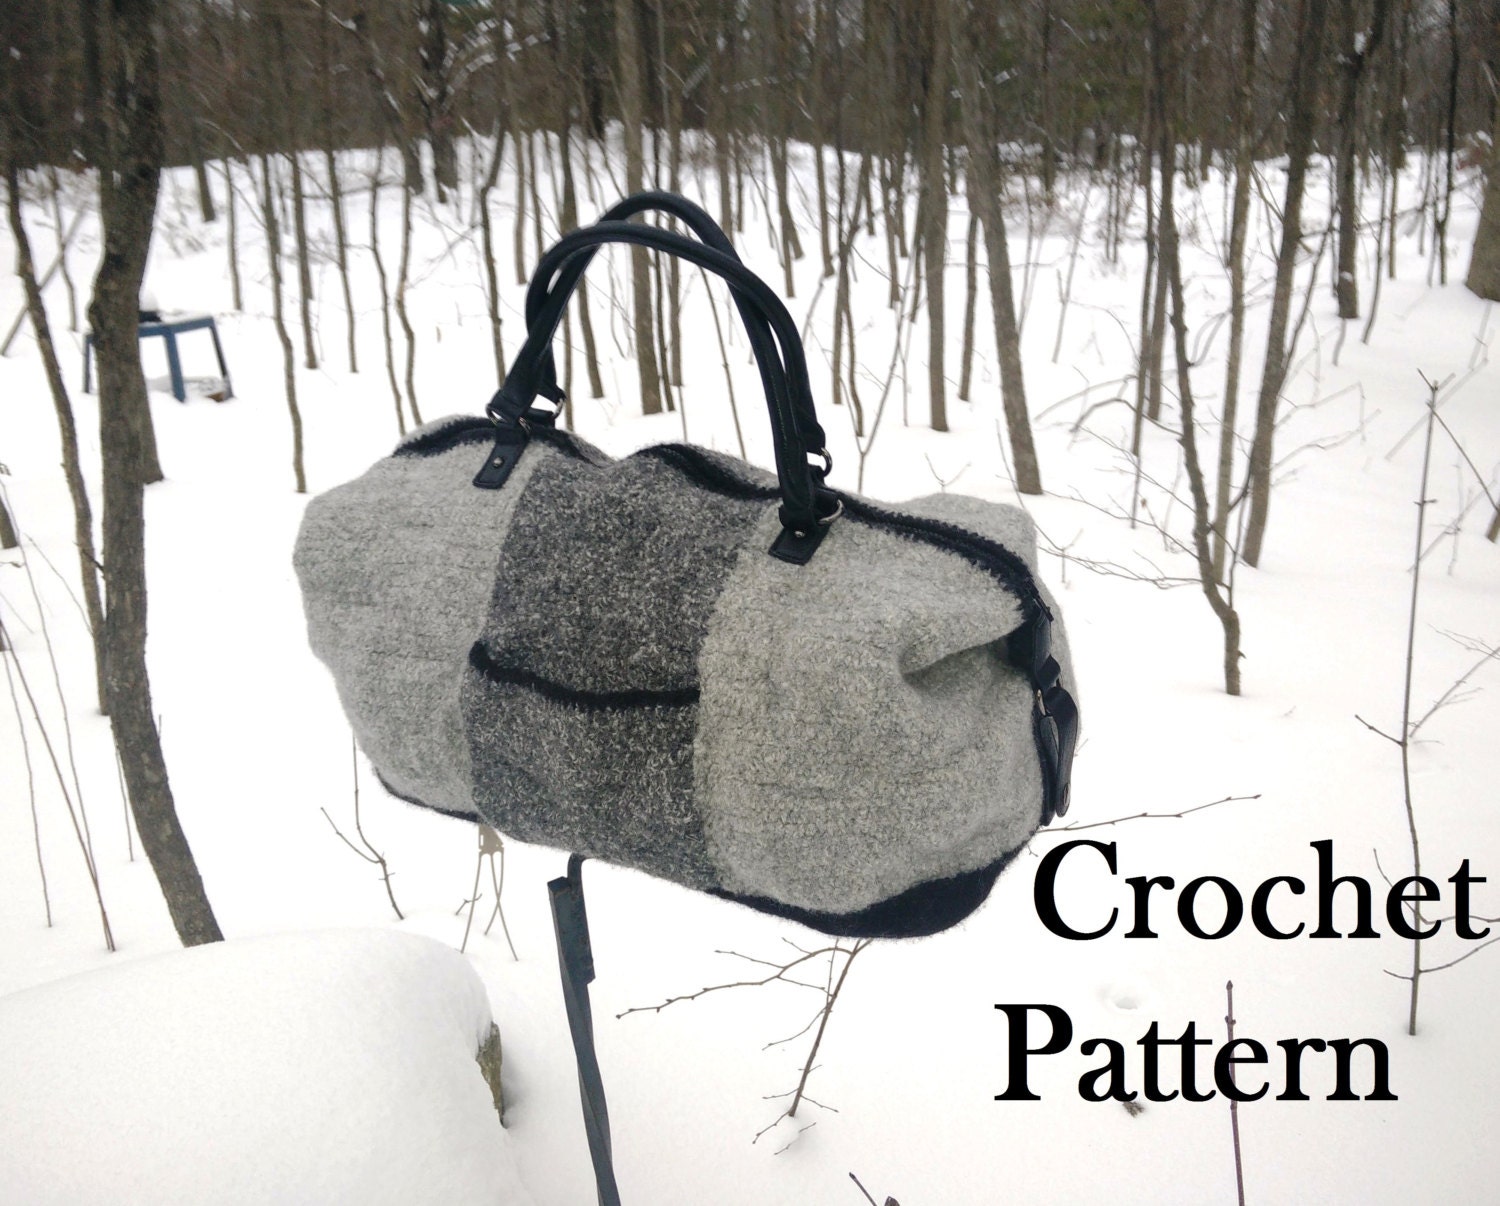 Crochet pattern: Weekender Bag